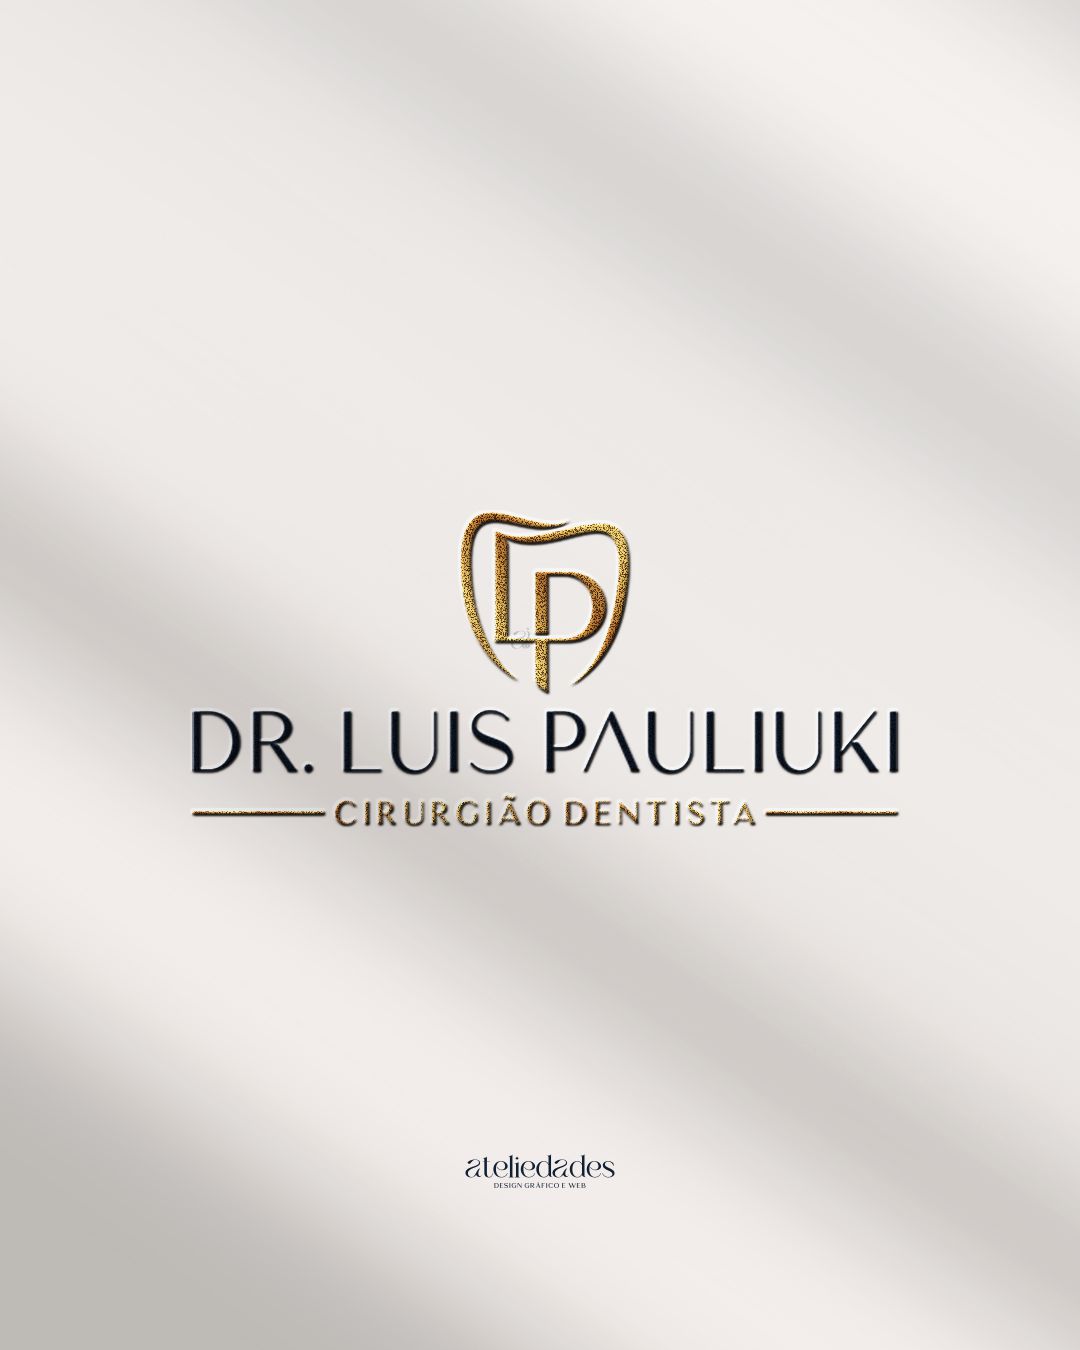 ateliedades logotipo para cirurgião dentistas odontologia dr luis pauliuki